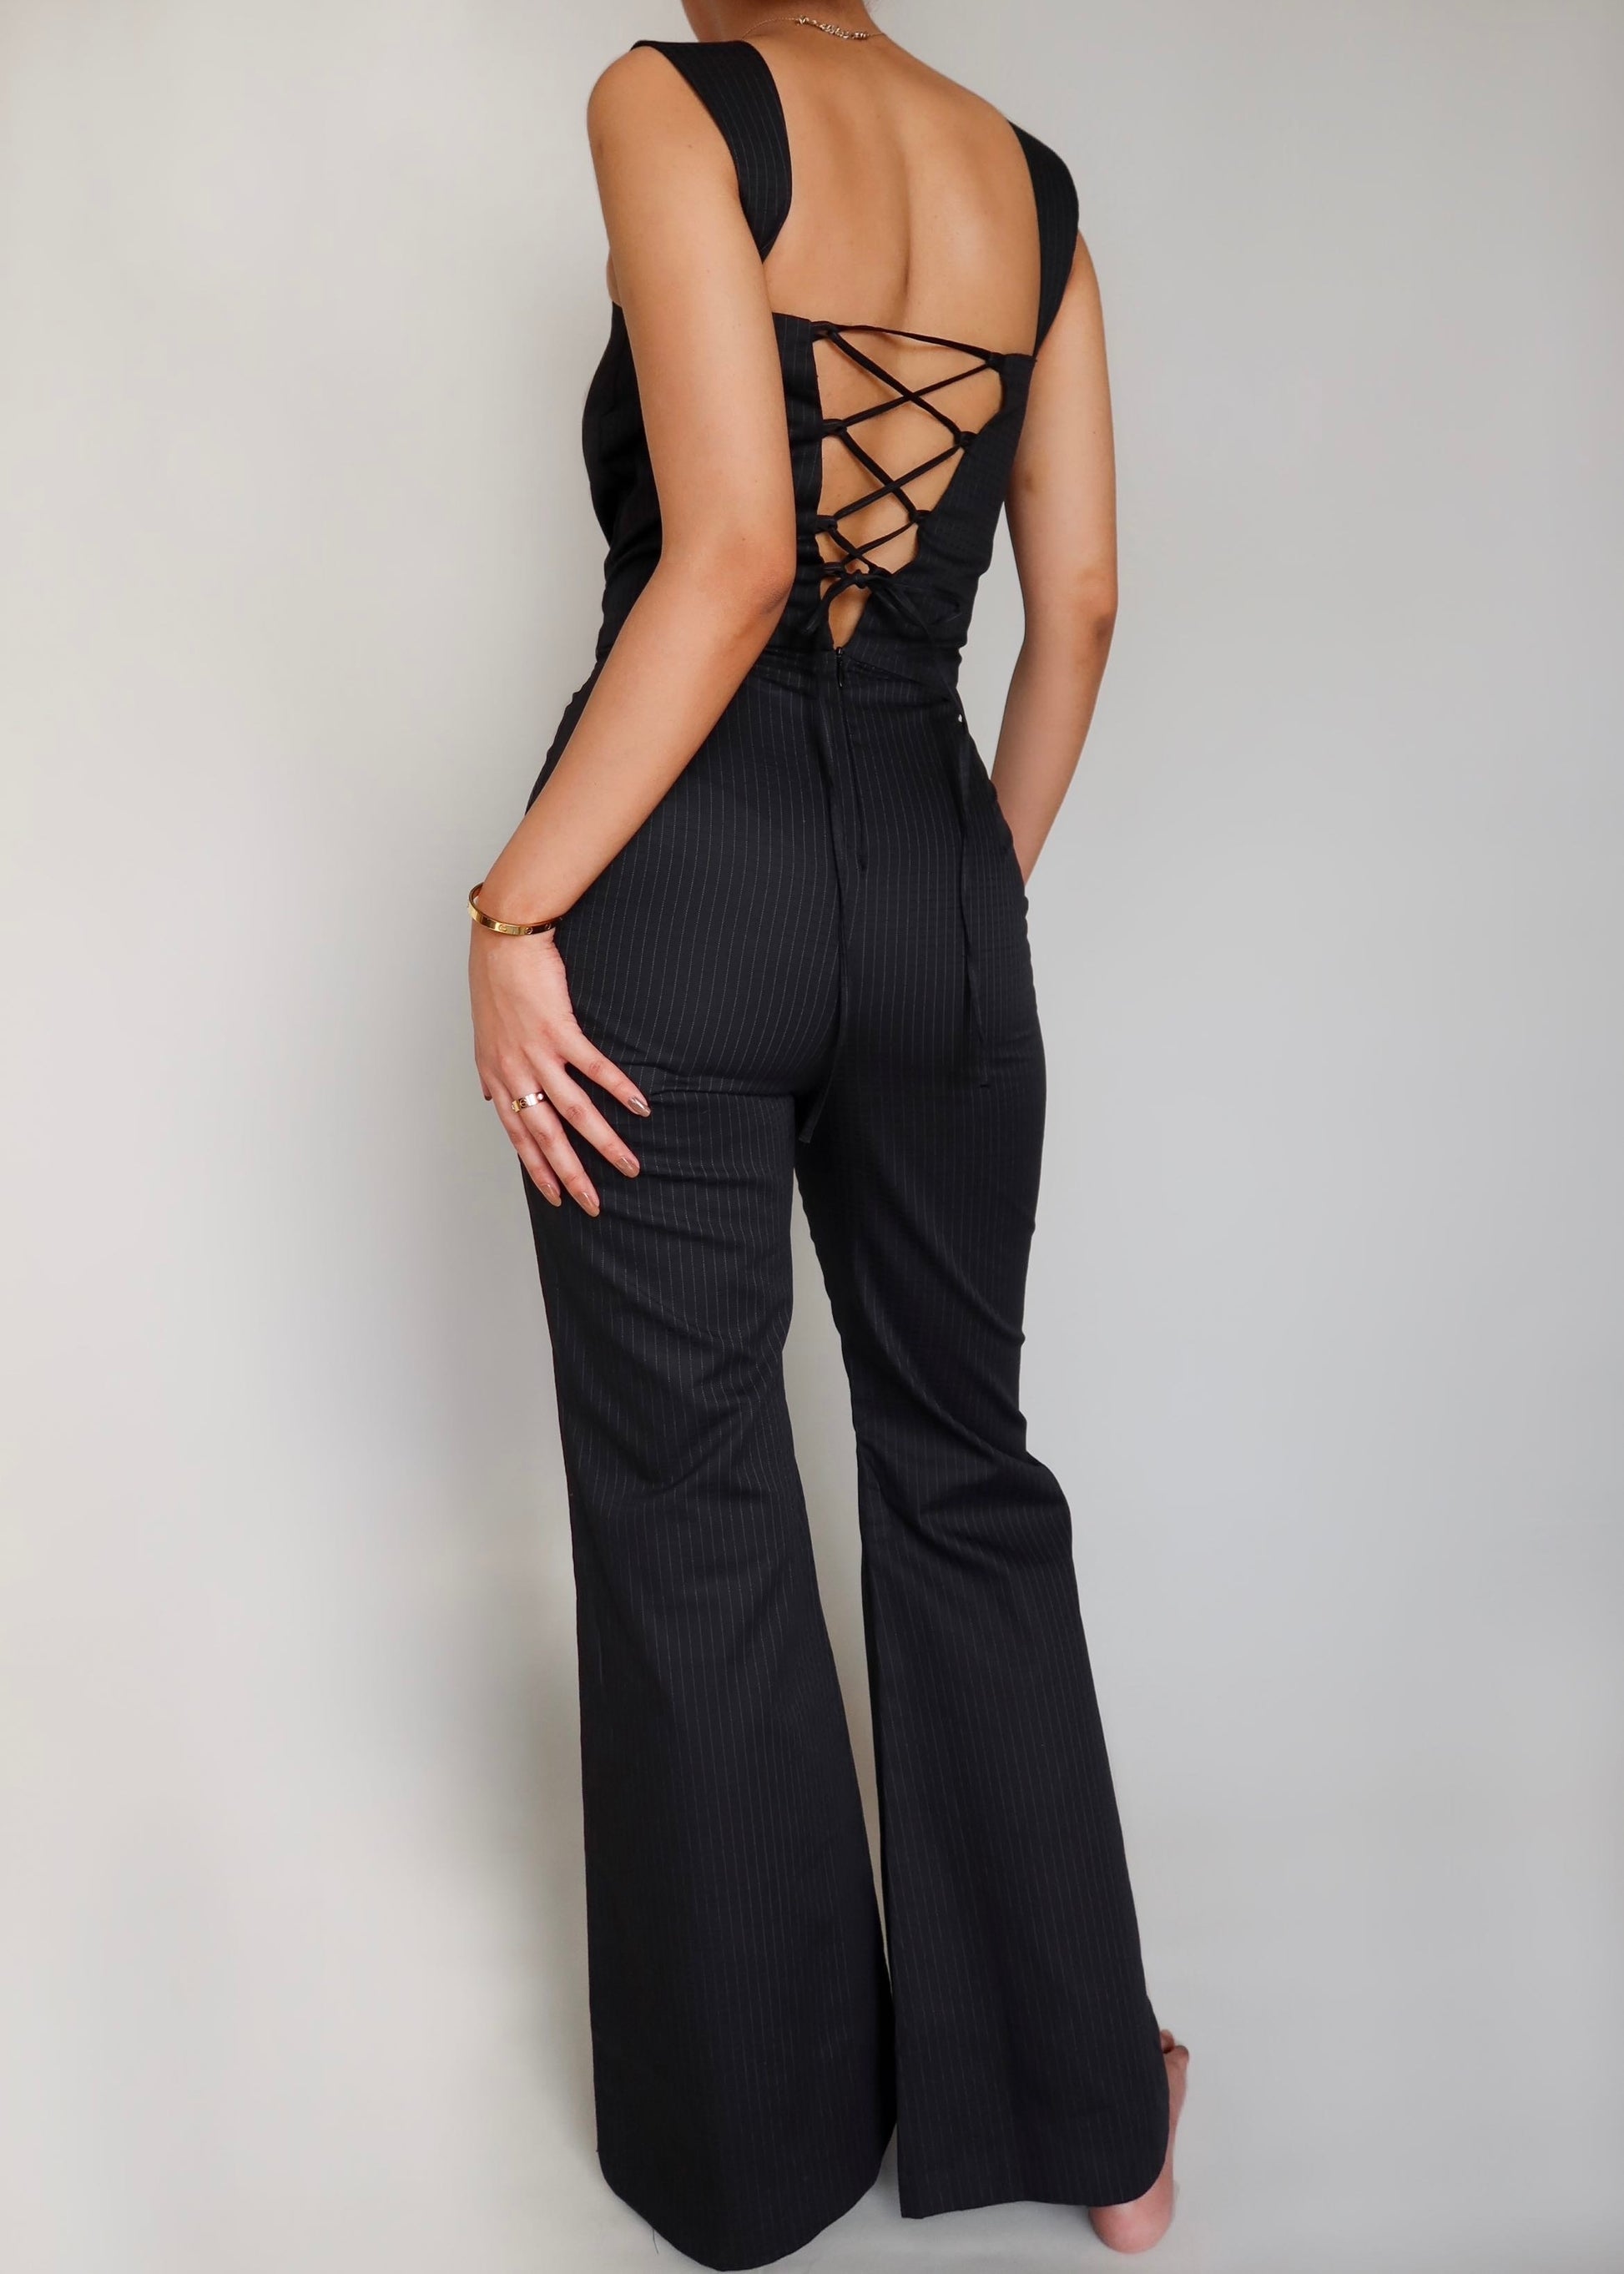 Pinstripe Black Jumpsuit – diamondlady